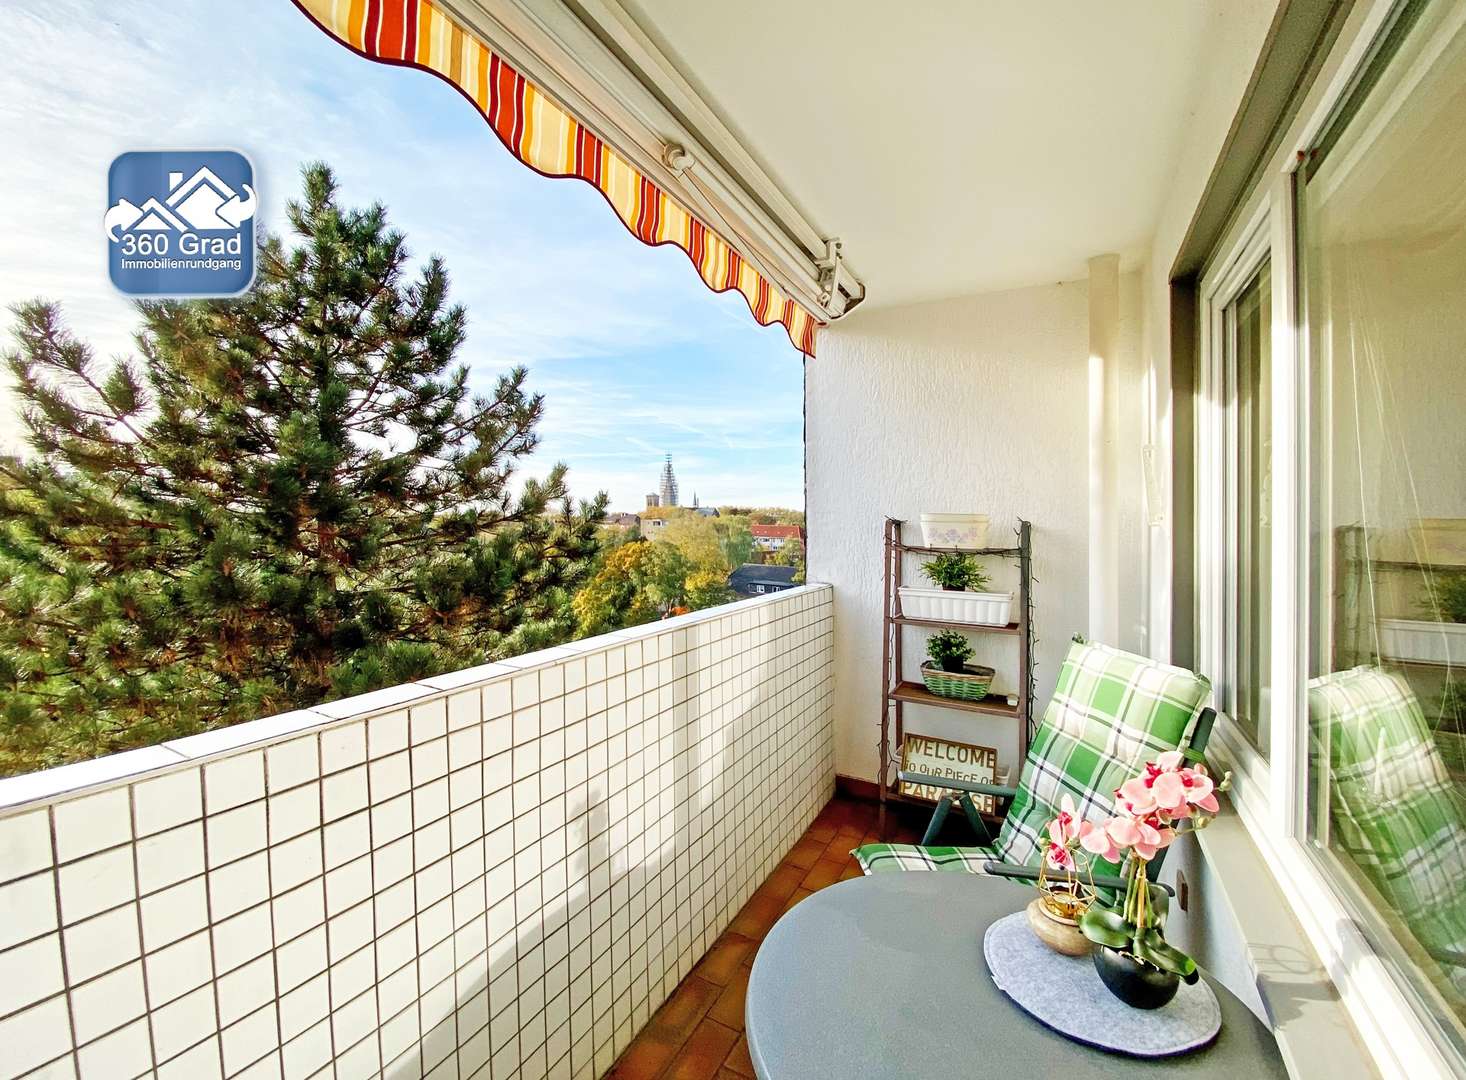 Balkon mit Markise - Etagenwohnung in 44625 Herne mit 83m² günstig kaufen